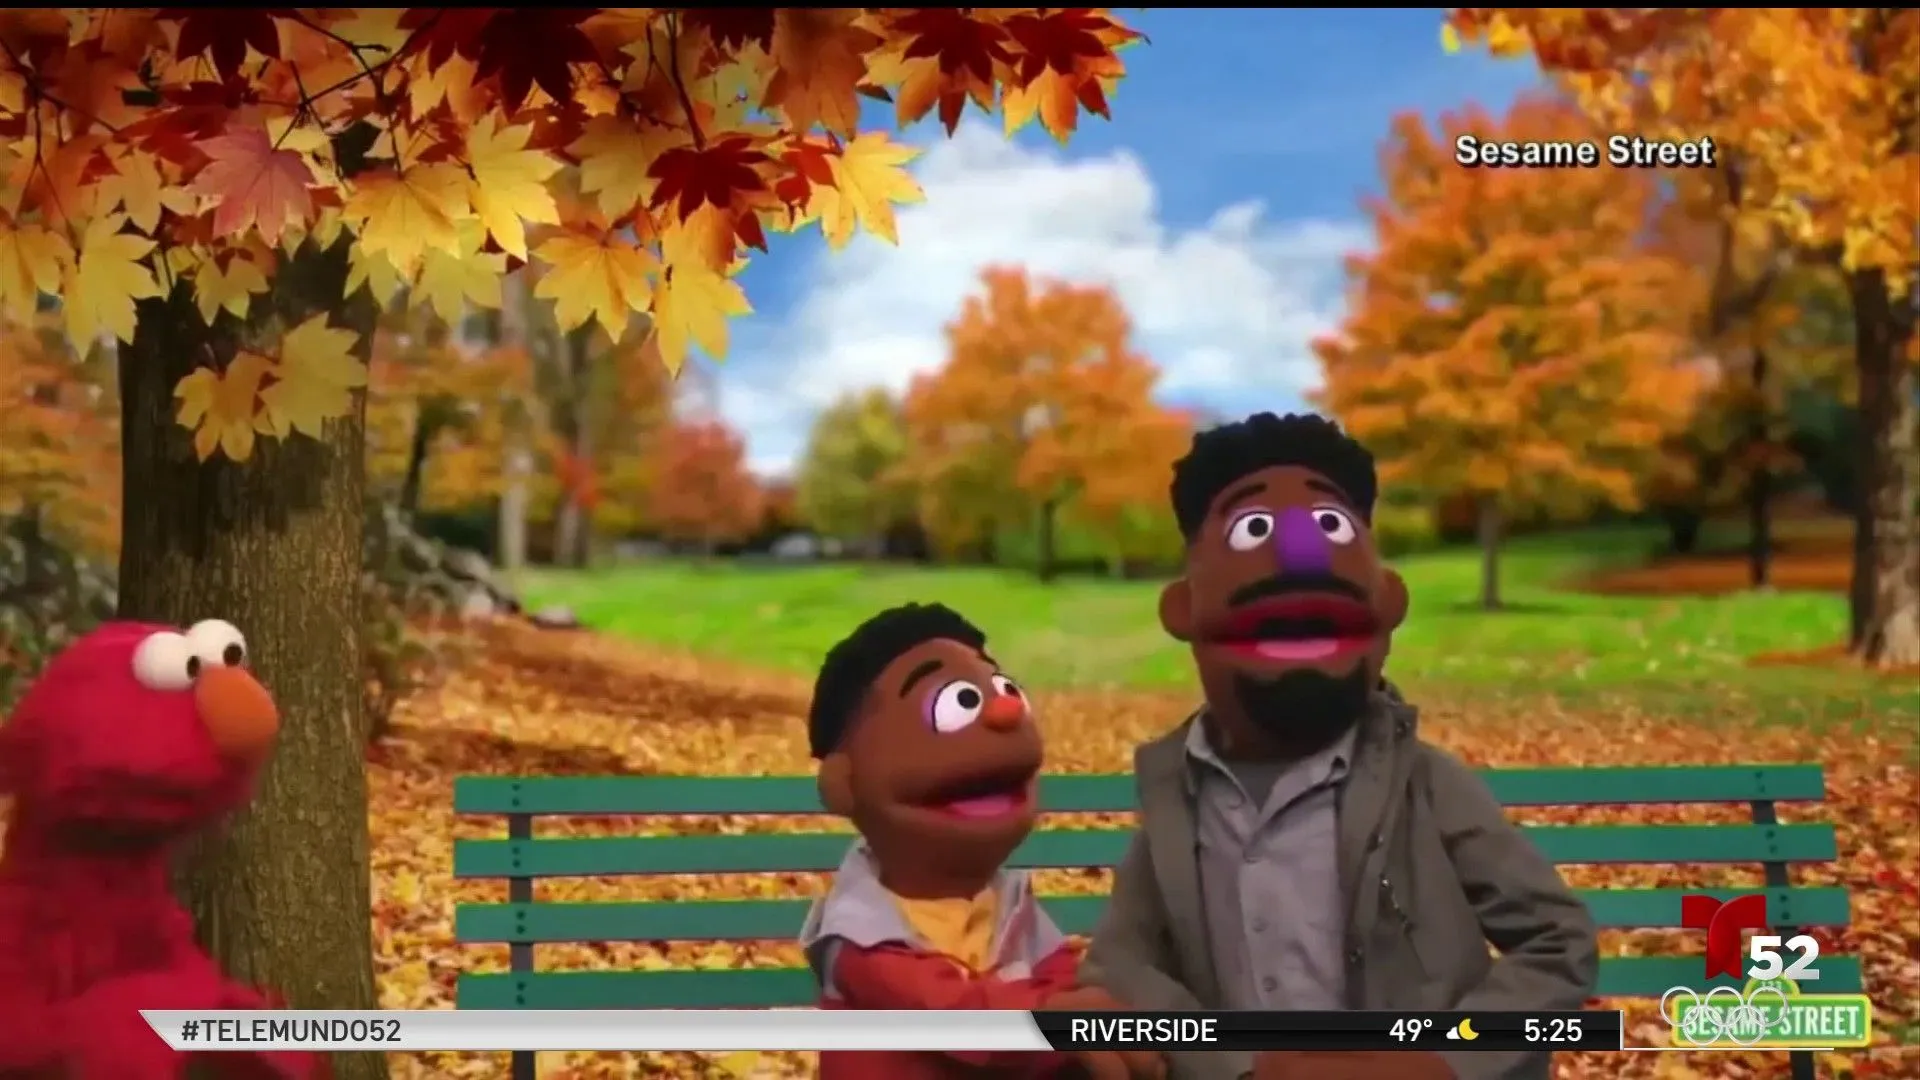 Sesame Street: Plaza Sésamo aborda racismo incluyendo a dos personajes  afroamericanos – Telemundo Fresno